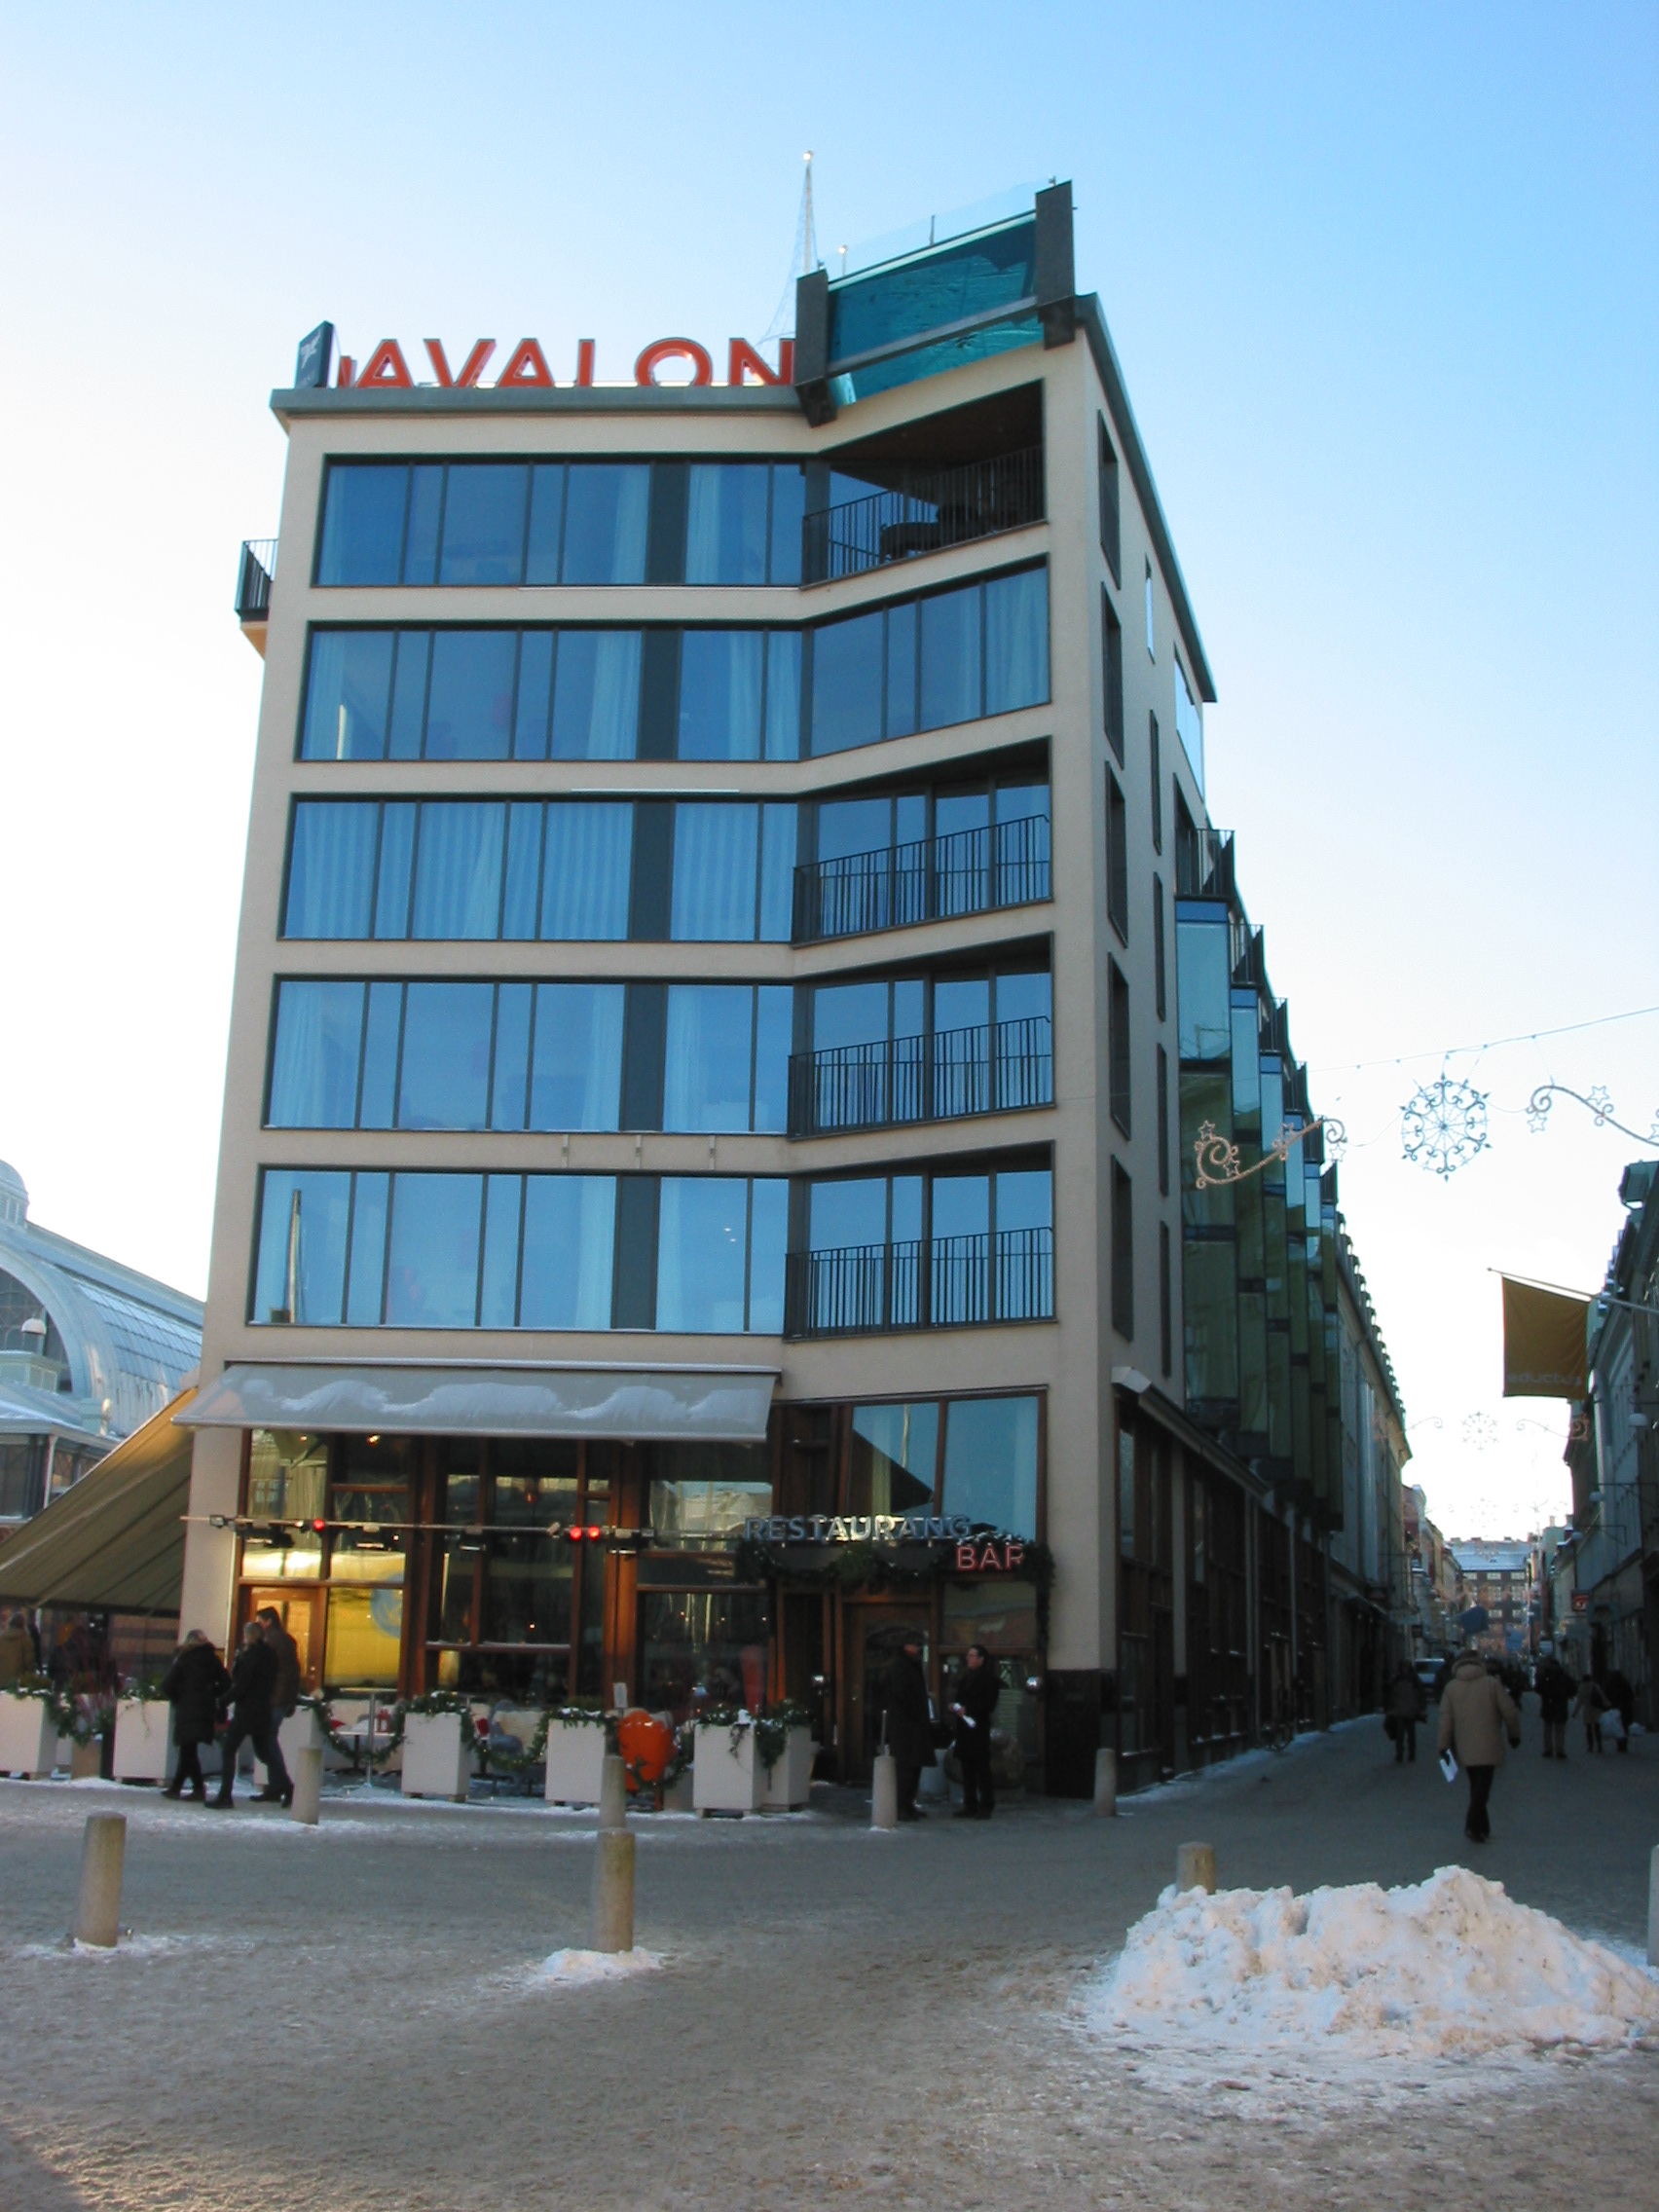 År 2007 uppfördes en sexvånings nybyggnad som satte sitt avtryck i stadsbilden, Hotel Avalon. För utformningen stod Semrén & Månsson Arkitektkontor. Lösningen för platsen blev en s.k. ”infill” som fullföljer det gamla kvarterets långsträckta, spetsiga form. De stora glasade fönsterbanden, den höga och smala byggnadskroppen samt den uppstickande poolen på taket ger ett lätt intryck. Den krökta fasaden och den öppna bottenvåningen ger förutsättningarna för att skapa en mötesplats på Kungsportsplatsens västra sida.